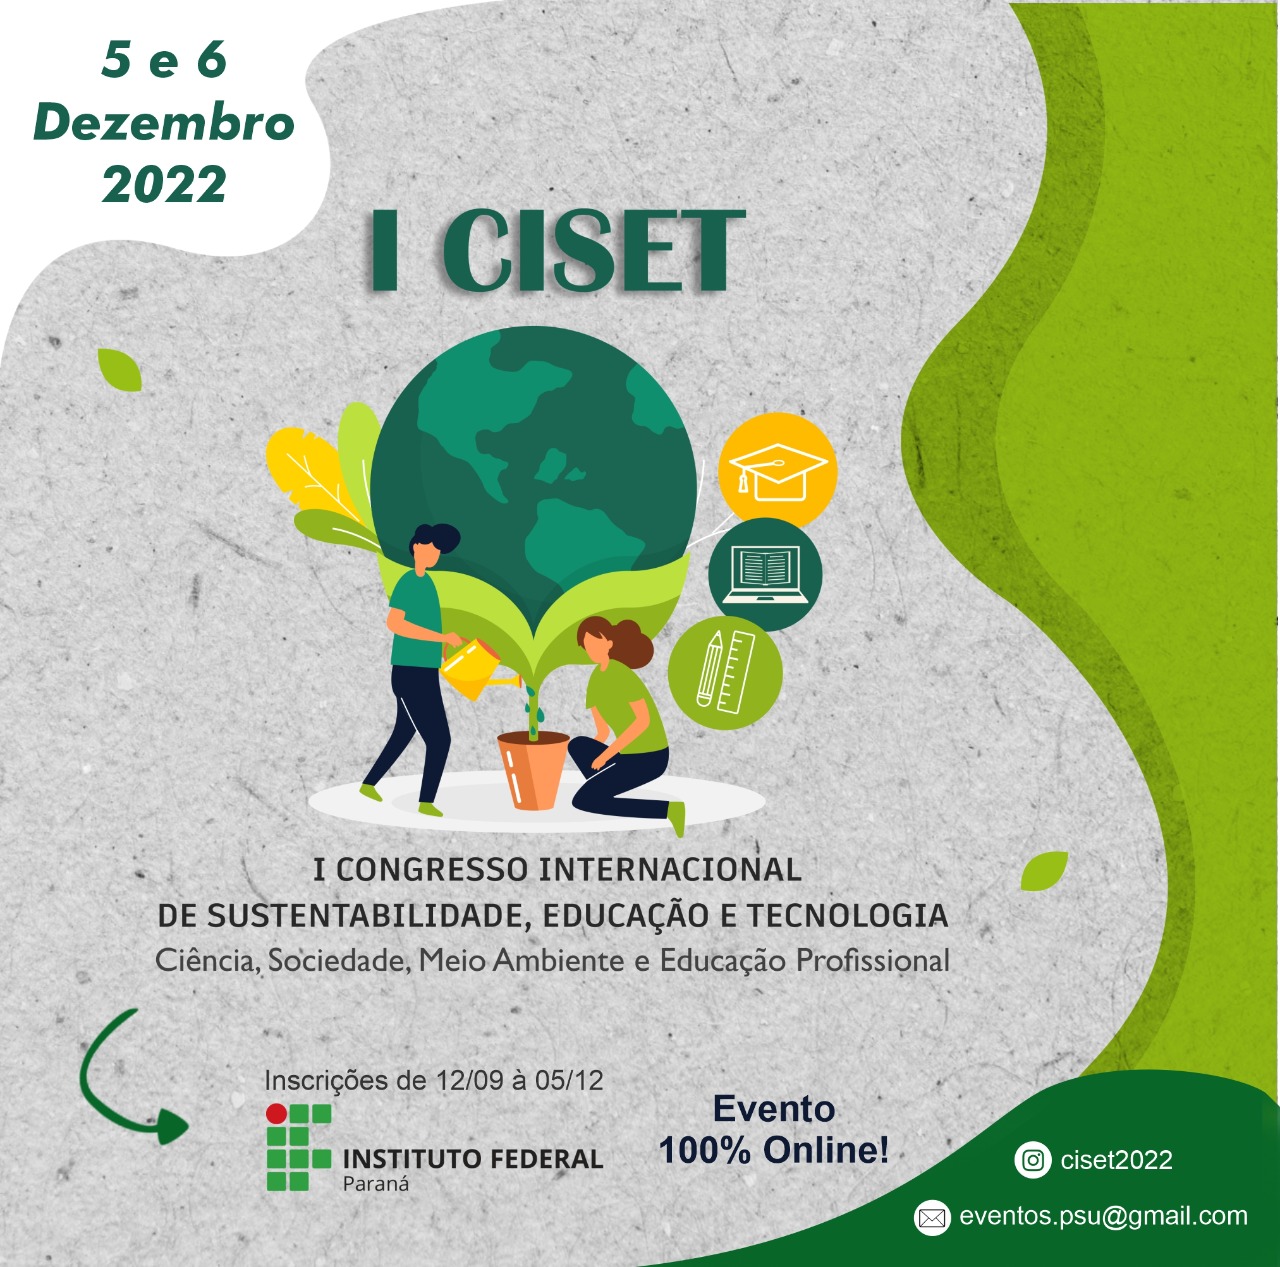 O Ciset 2022 será realizado nos dias 05 e 06 de dezembro, no Campus Umuarama